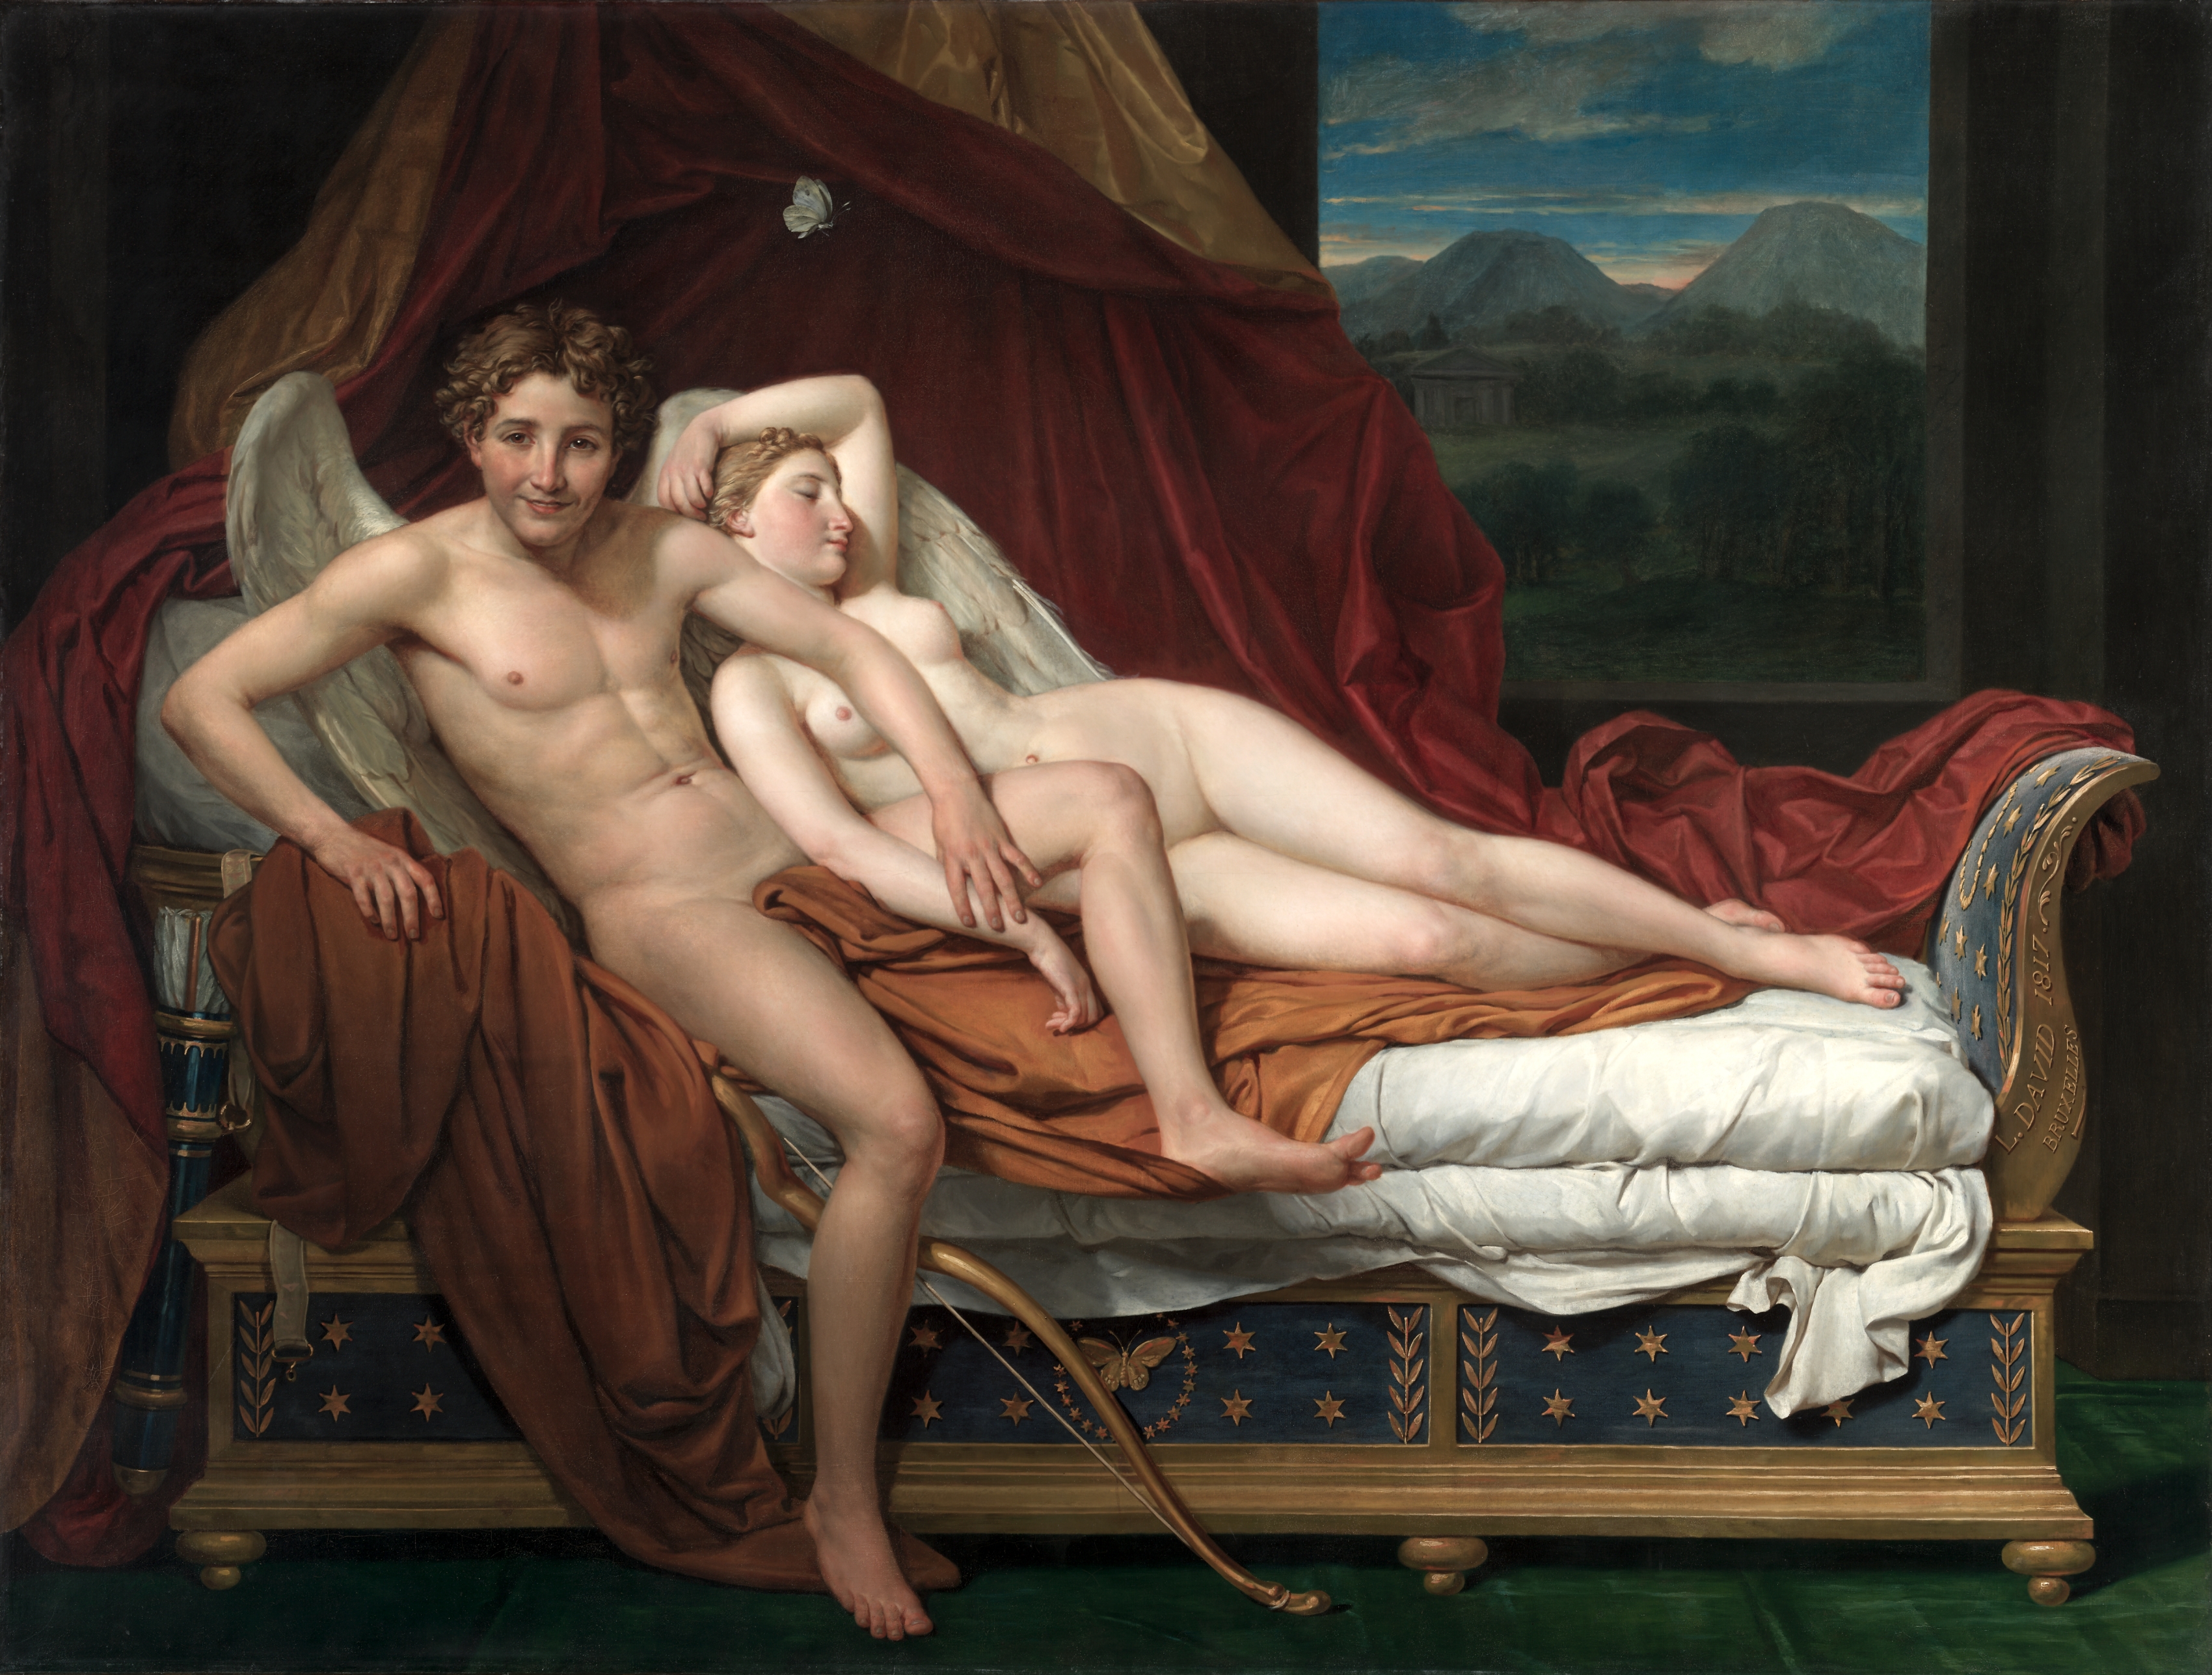 L'Amour et Psyché by Jacques-Louis David - 1817 - 184.2 x 241.6 cm Cleveland Museum of Art